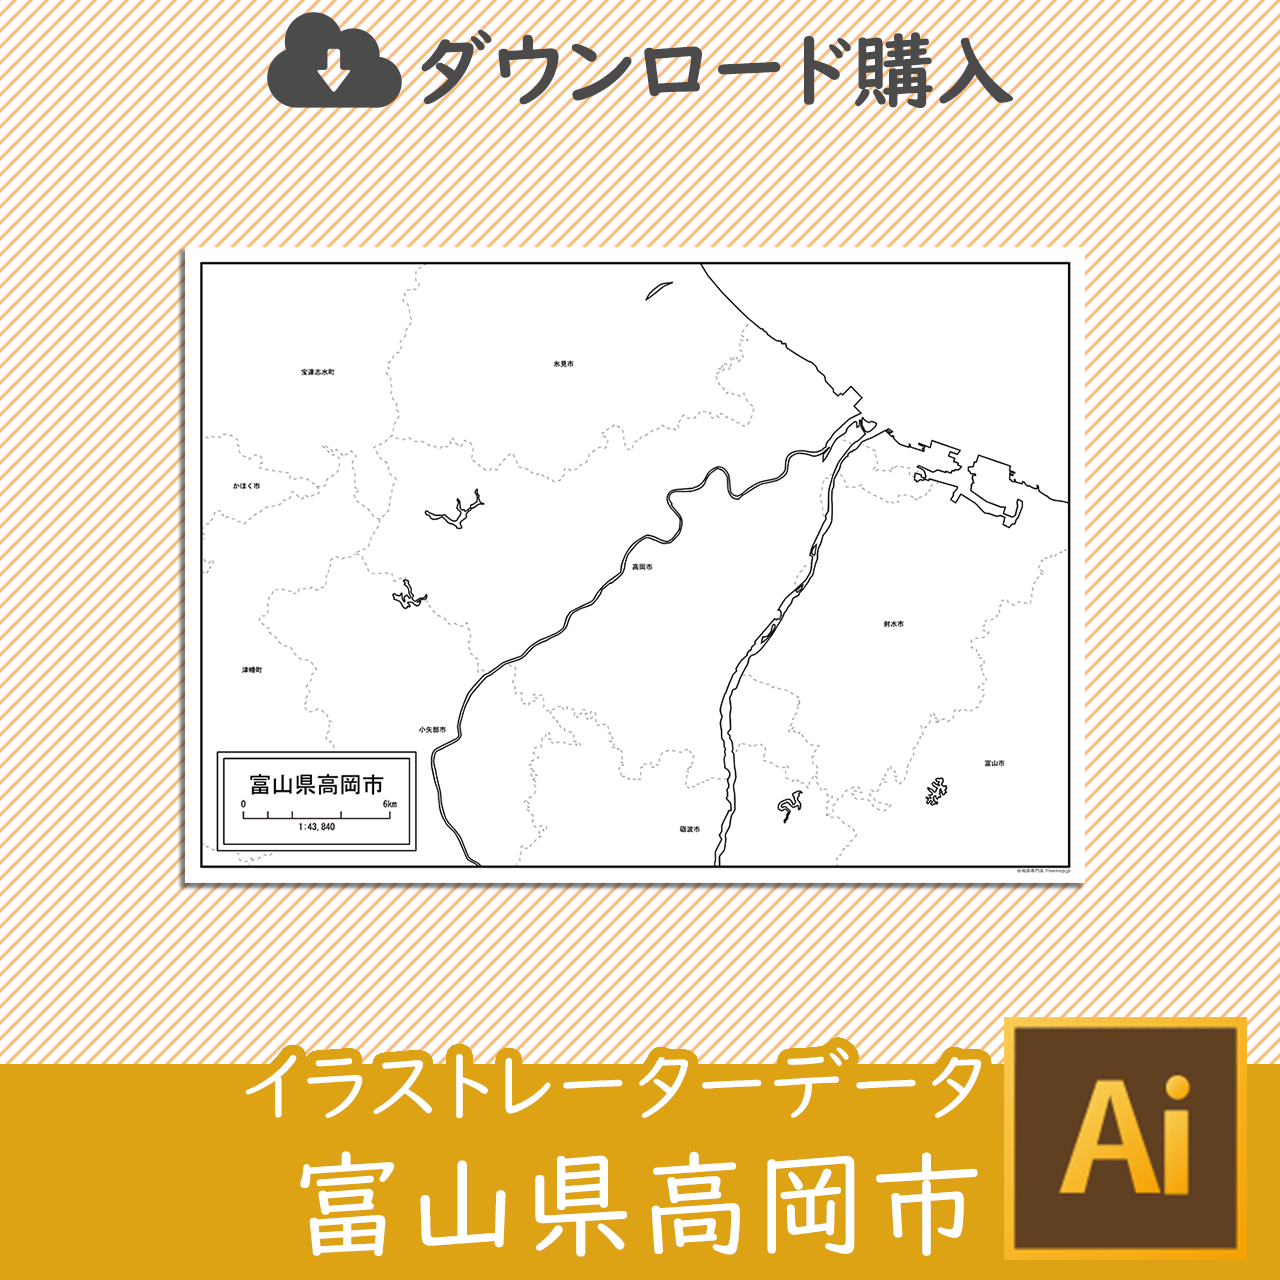 高岡市のaiデータのサムネイル画像